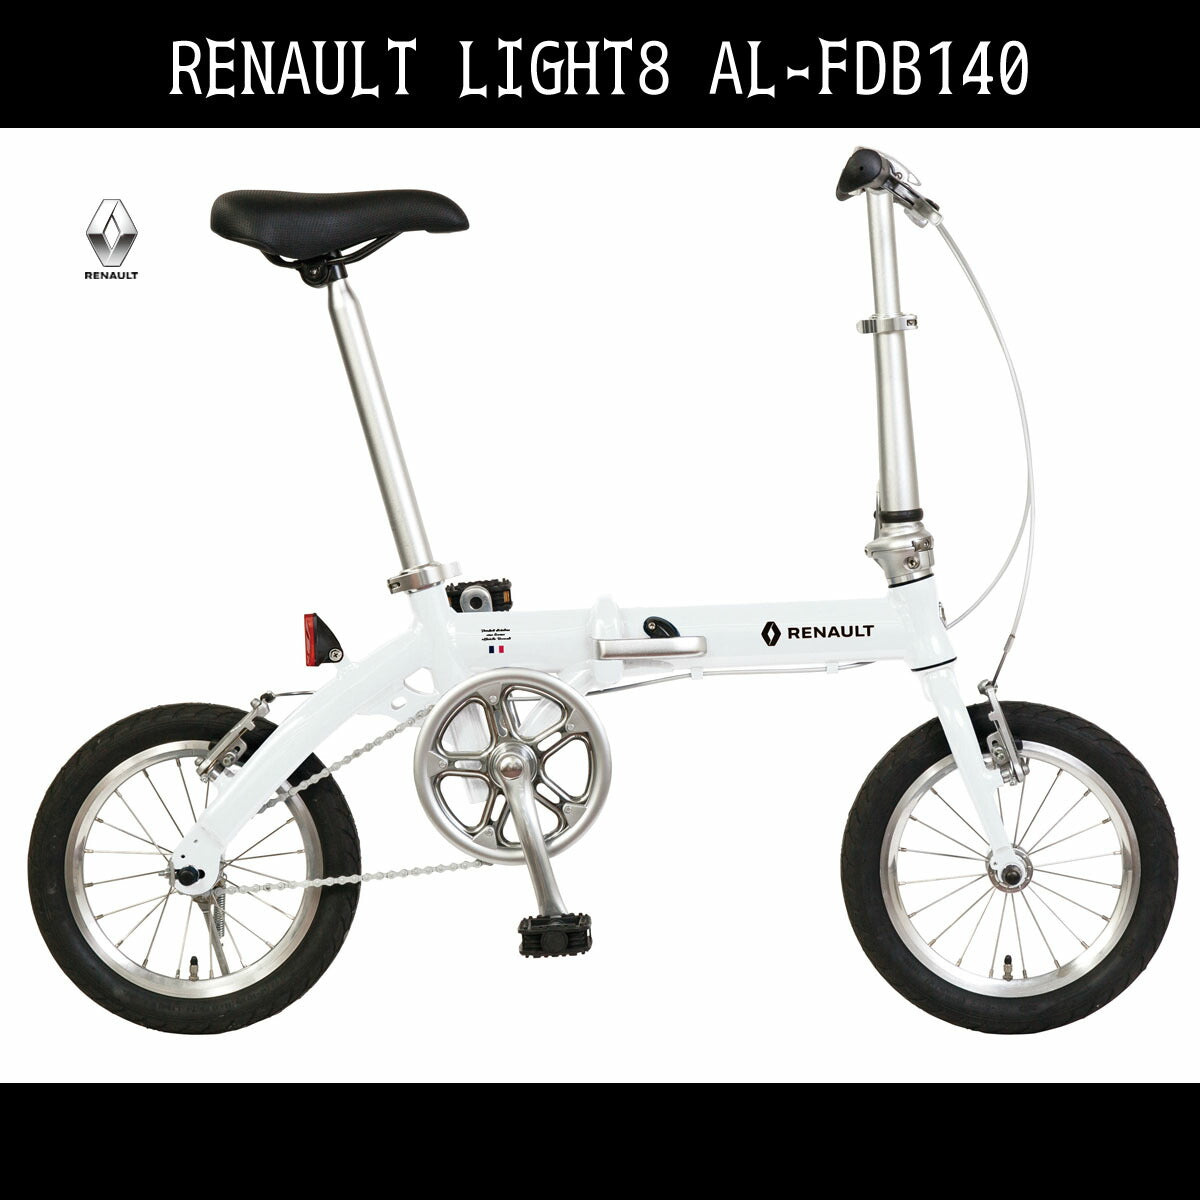 自転車 折りたたみ自転車 RENAULT AL-FDB140 LIGHT8 ルノー ギアなし 軽量 14インチ 白 ホワイト 変速なし アルミニウム  ライトエイト